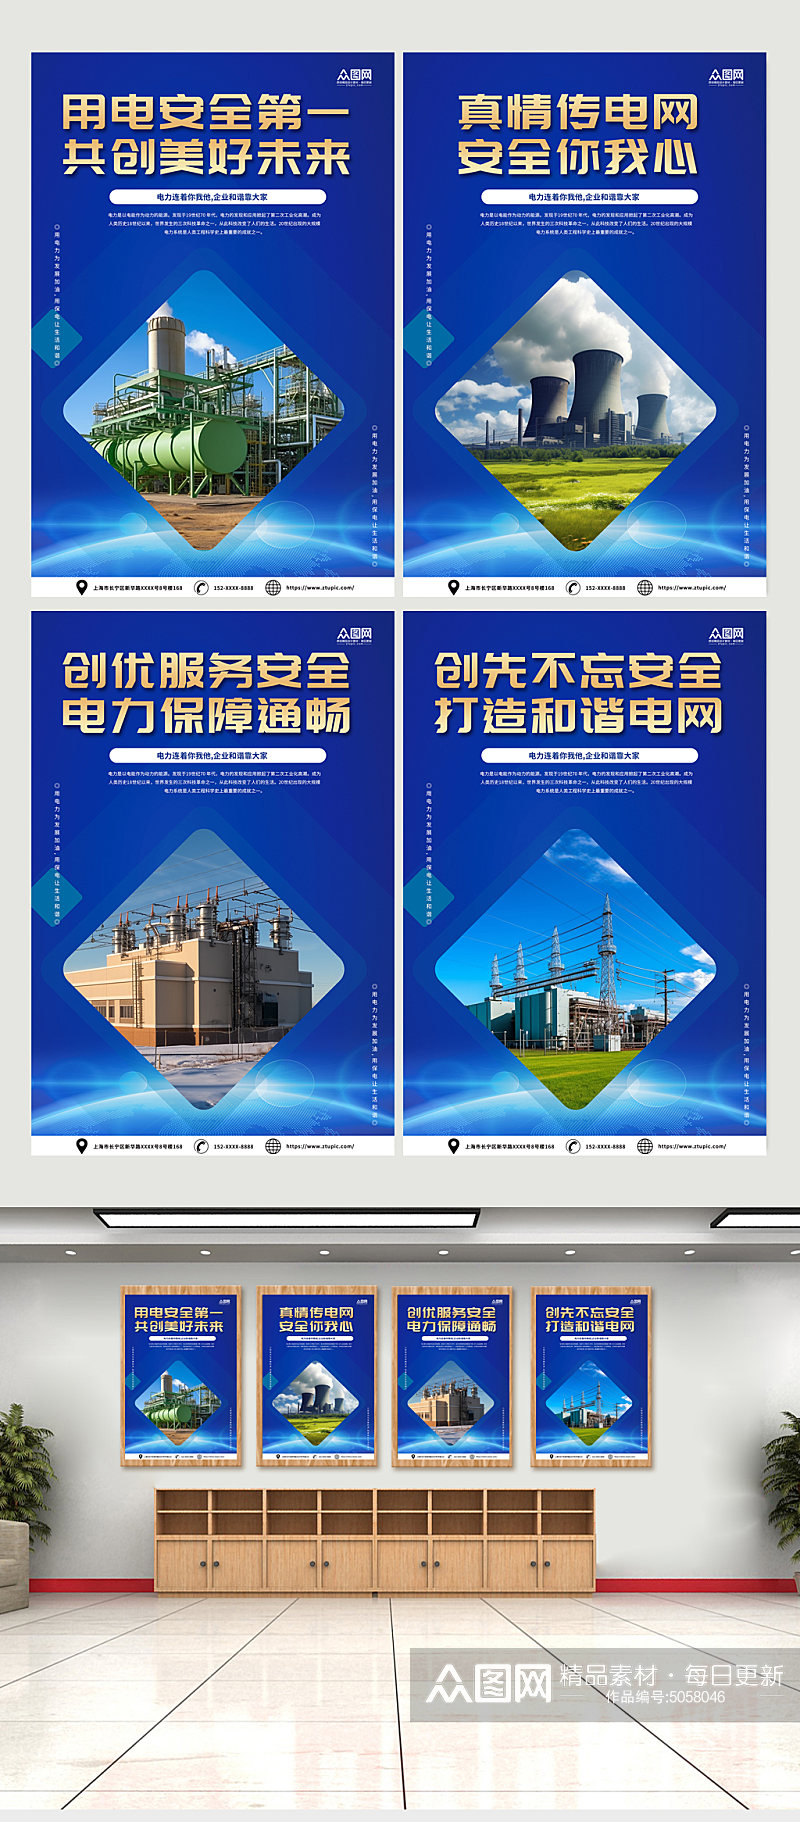 蓝色时尚国家电网企业文化宣传系列海报素材